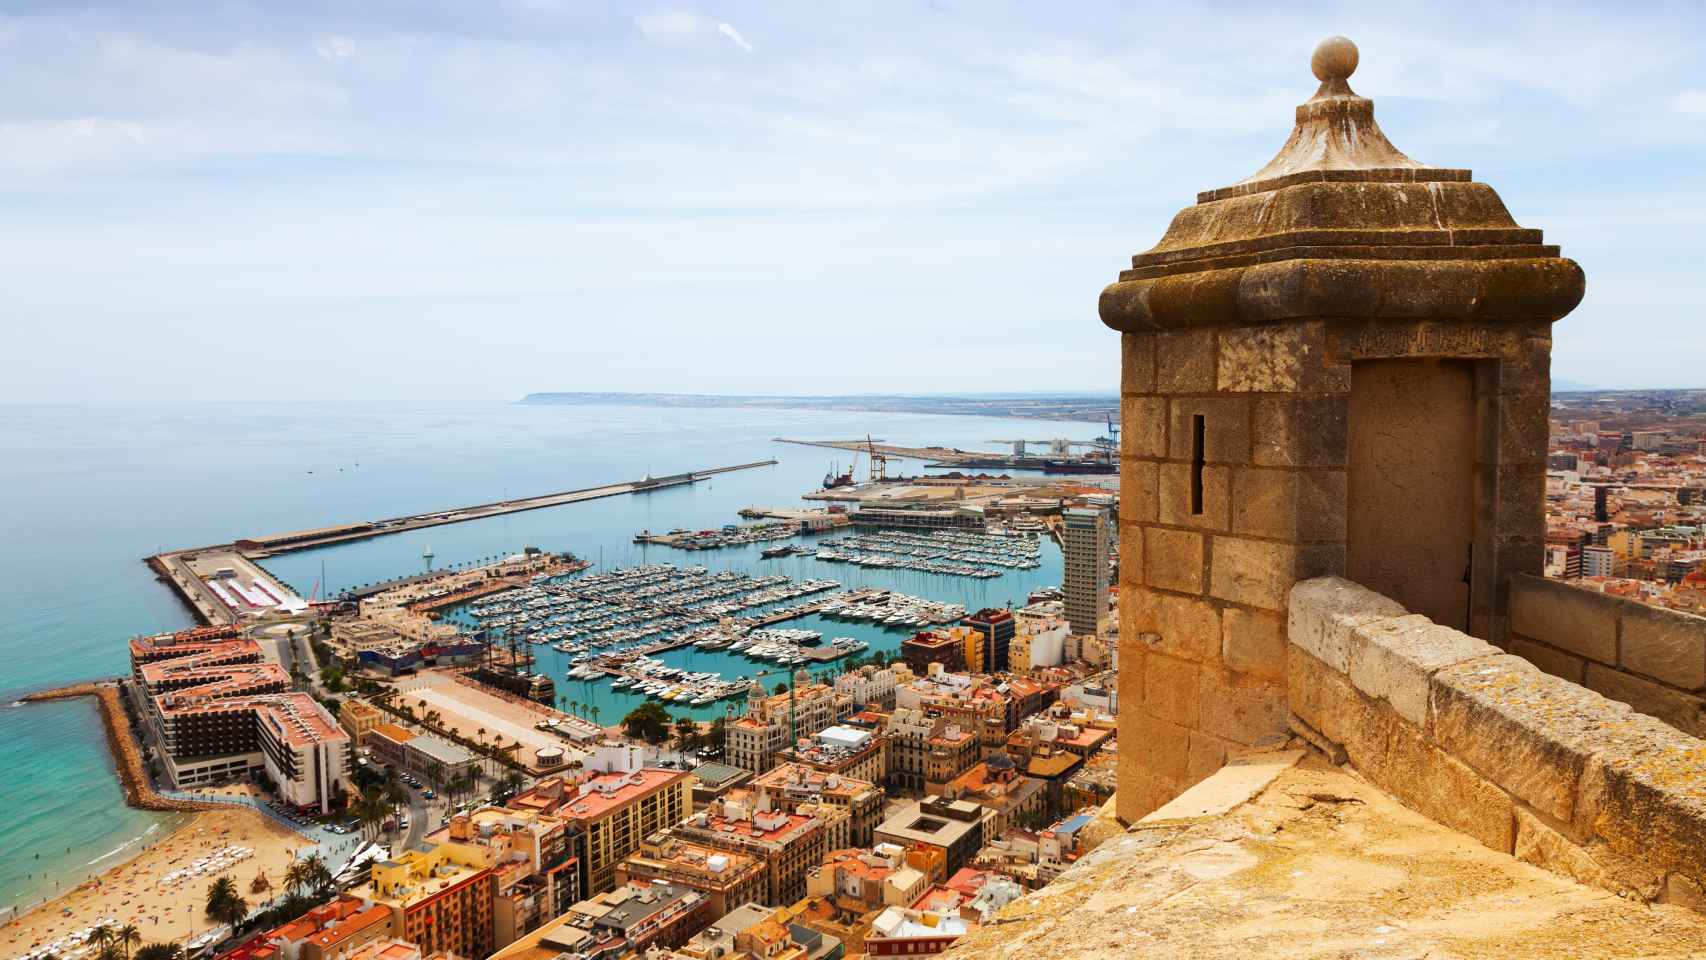 Puerto de Alicante desde el Castillo de Santa Bárbara.